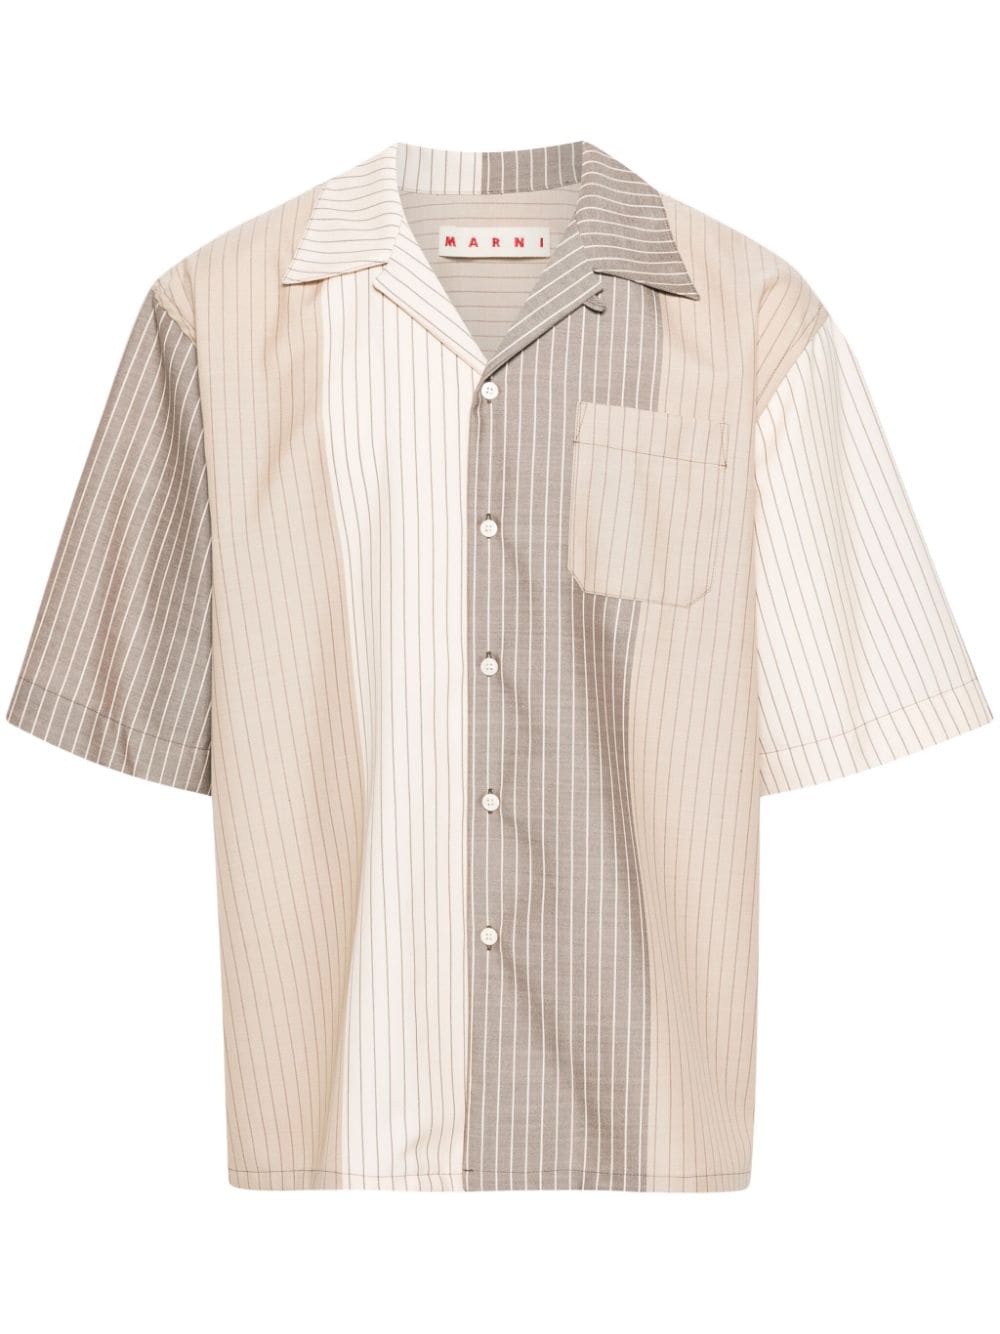 Marni Colour-block Pinstriped Shirt In Neutrals